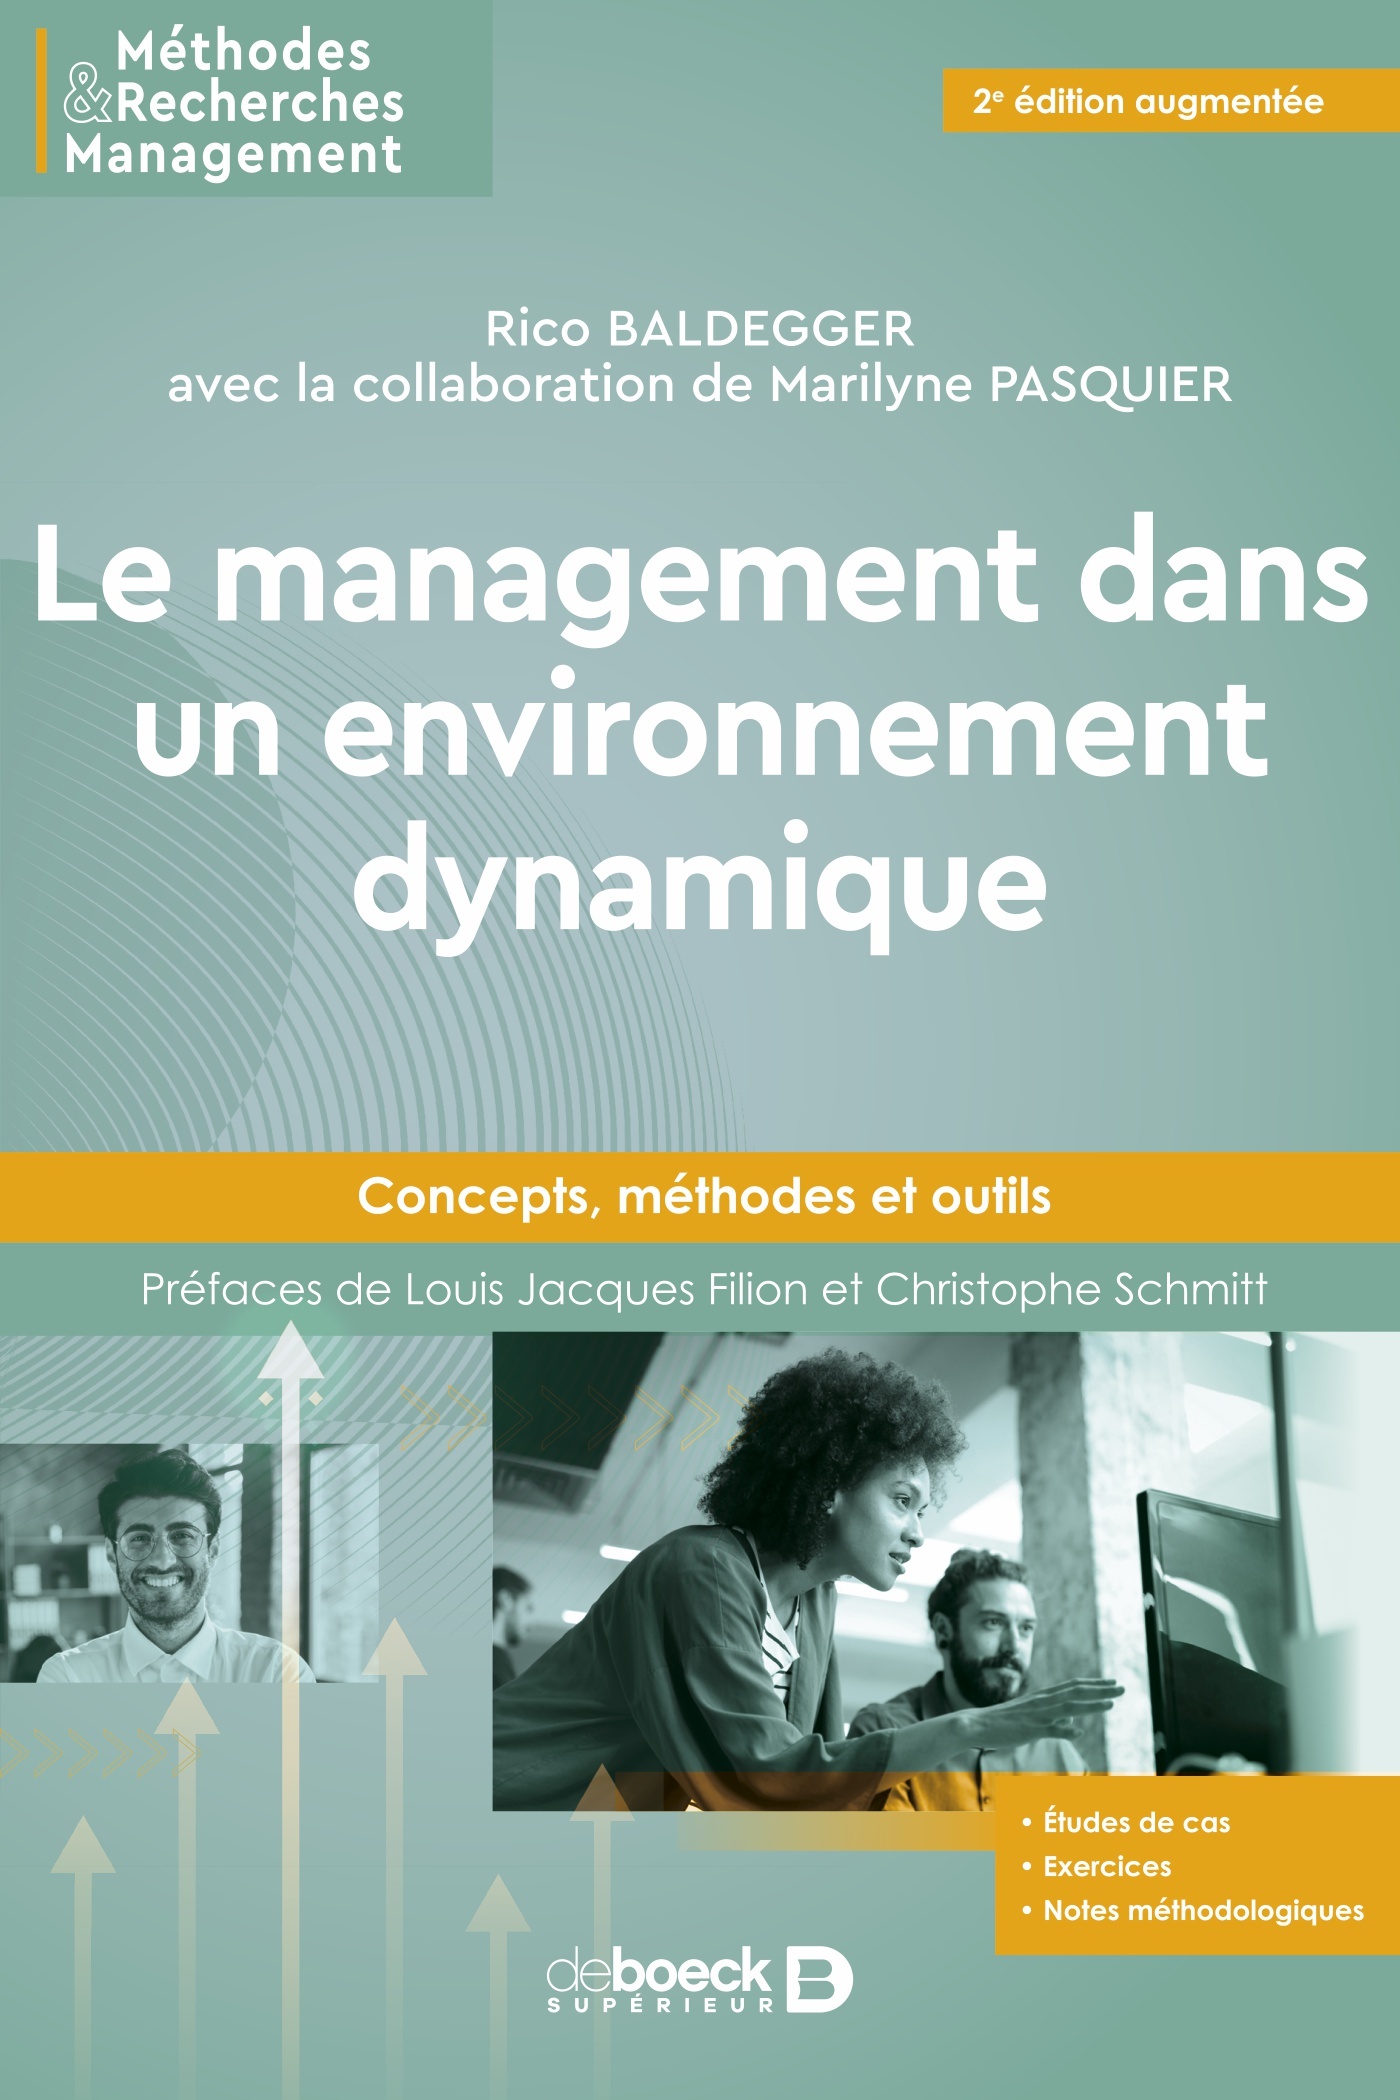 Couverture de la réédition augmentée du "Management dans un environnement dynamique" de Rico Baldegger avec la collaboration de Marilyne Pasquier.